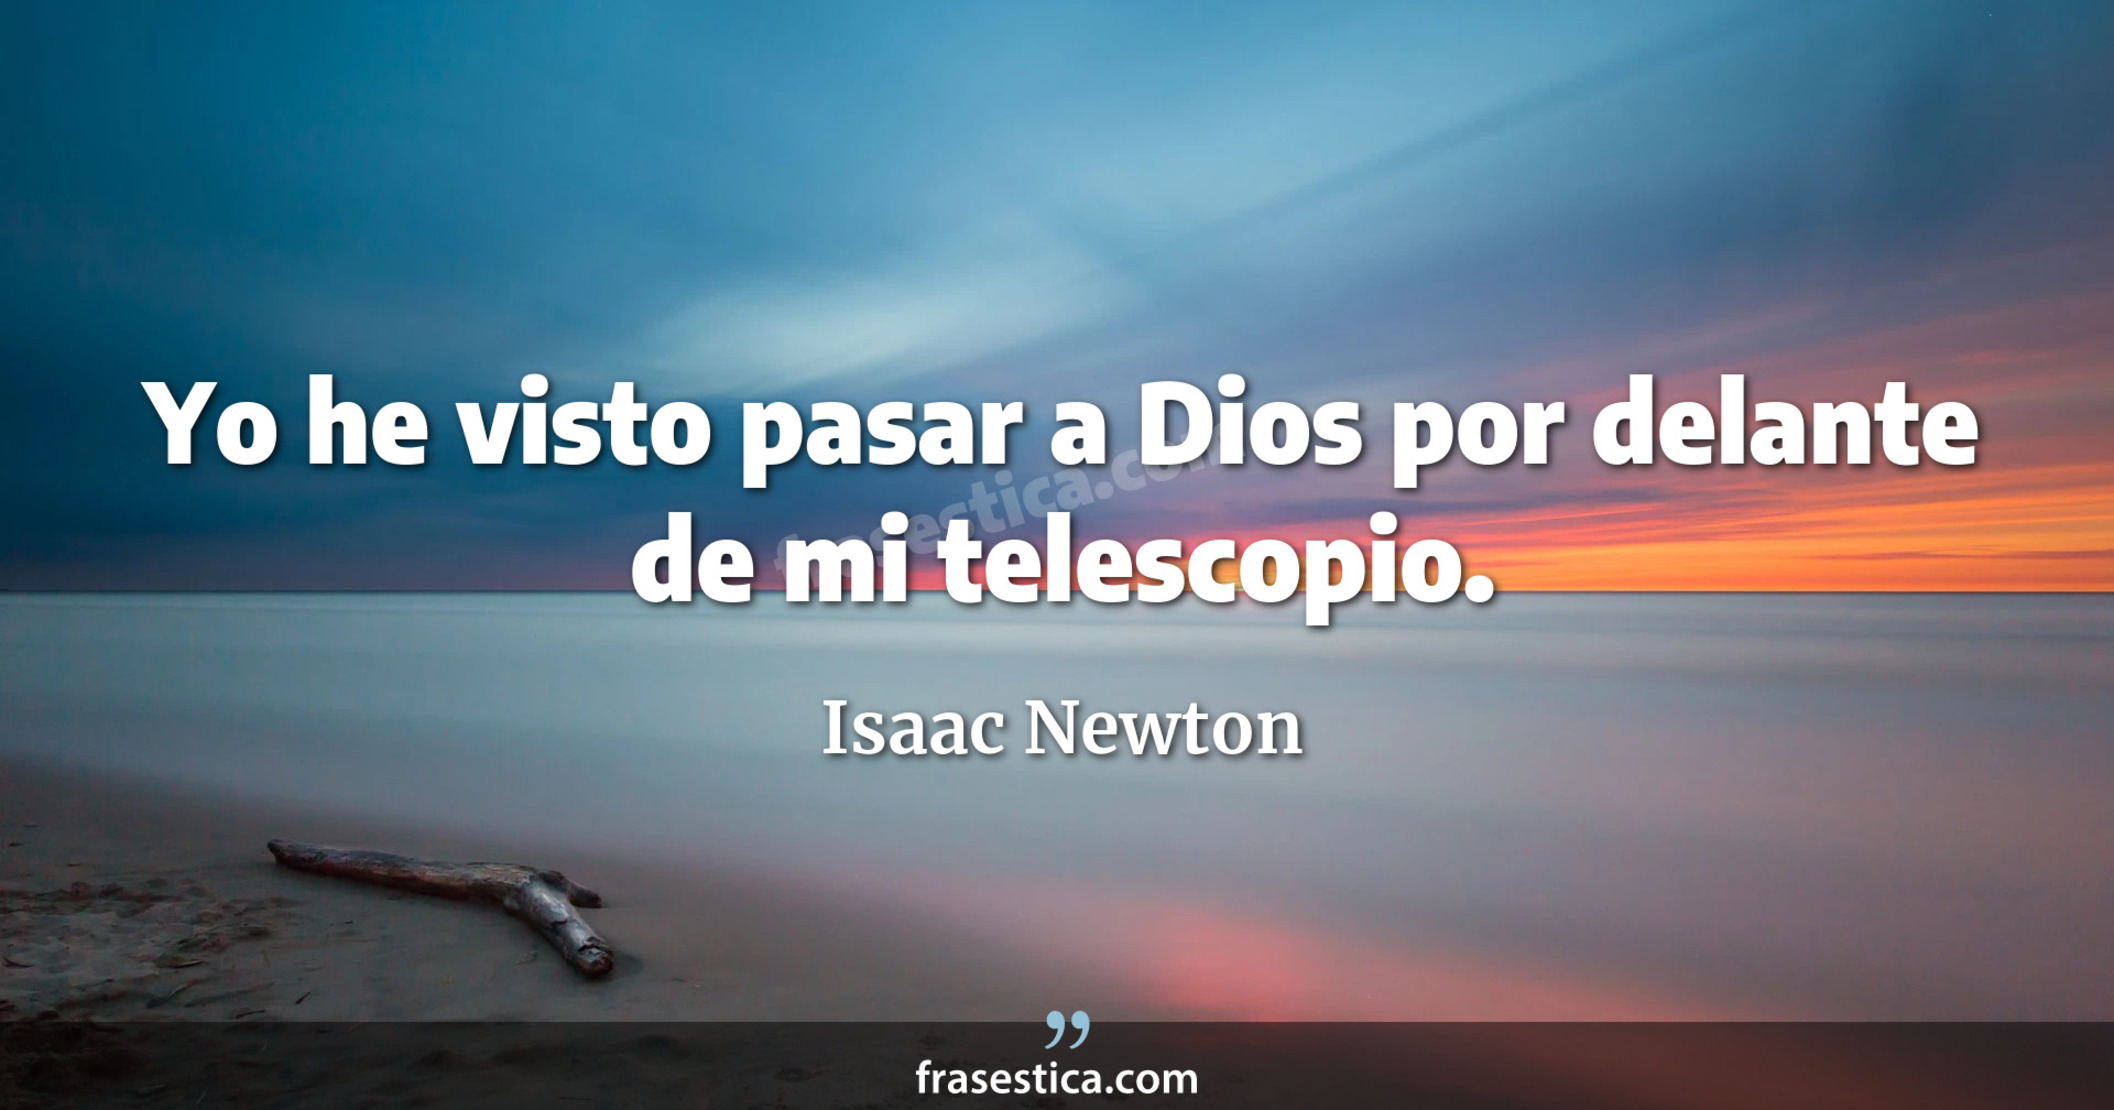 Yo he visto pasar a Dios por delante de mi telescopio. - Isaac Newton